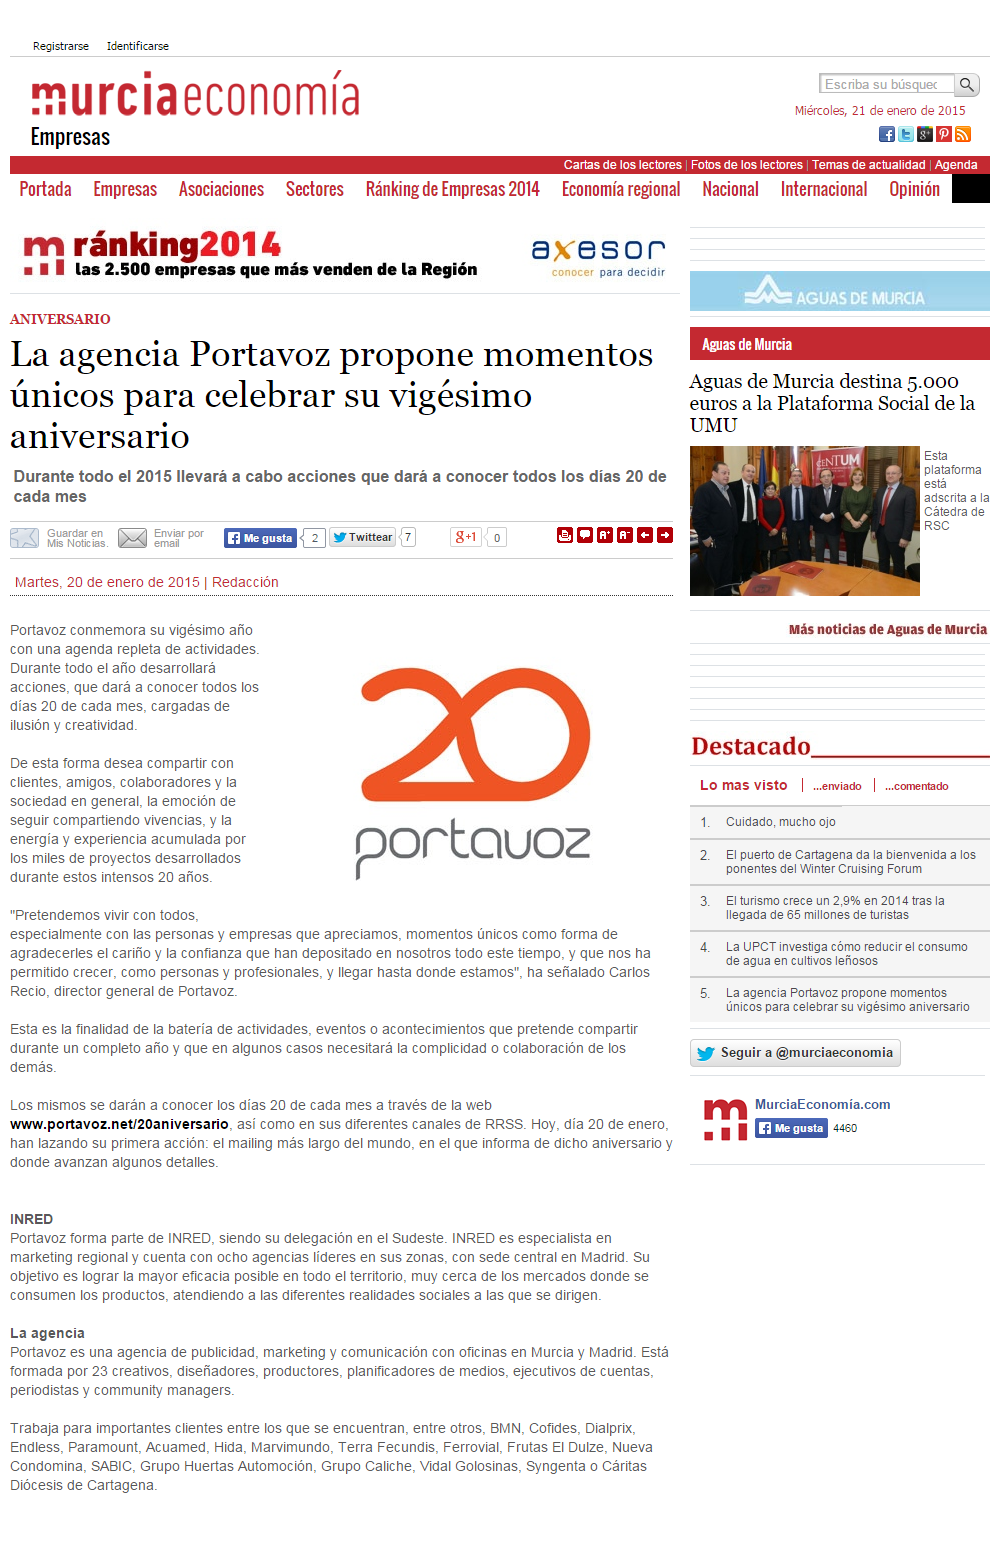 MurciaEconomía.com 20-1-15 Portavoz